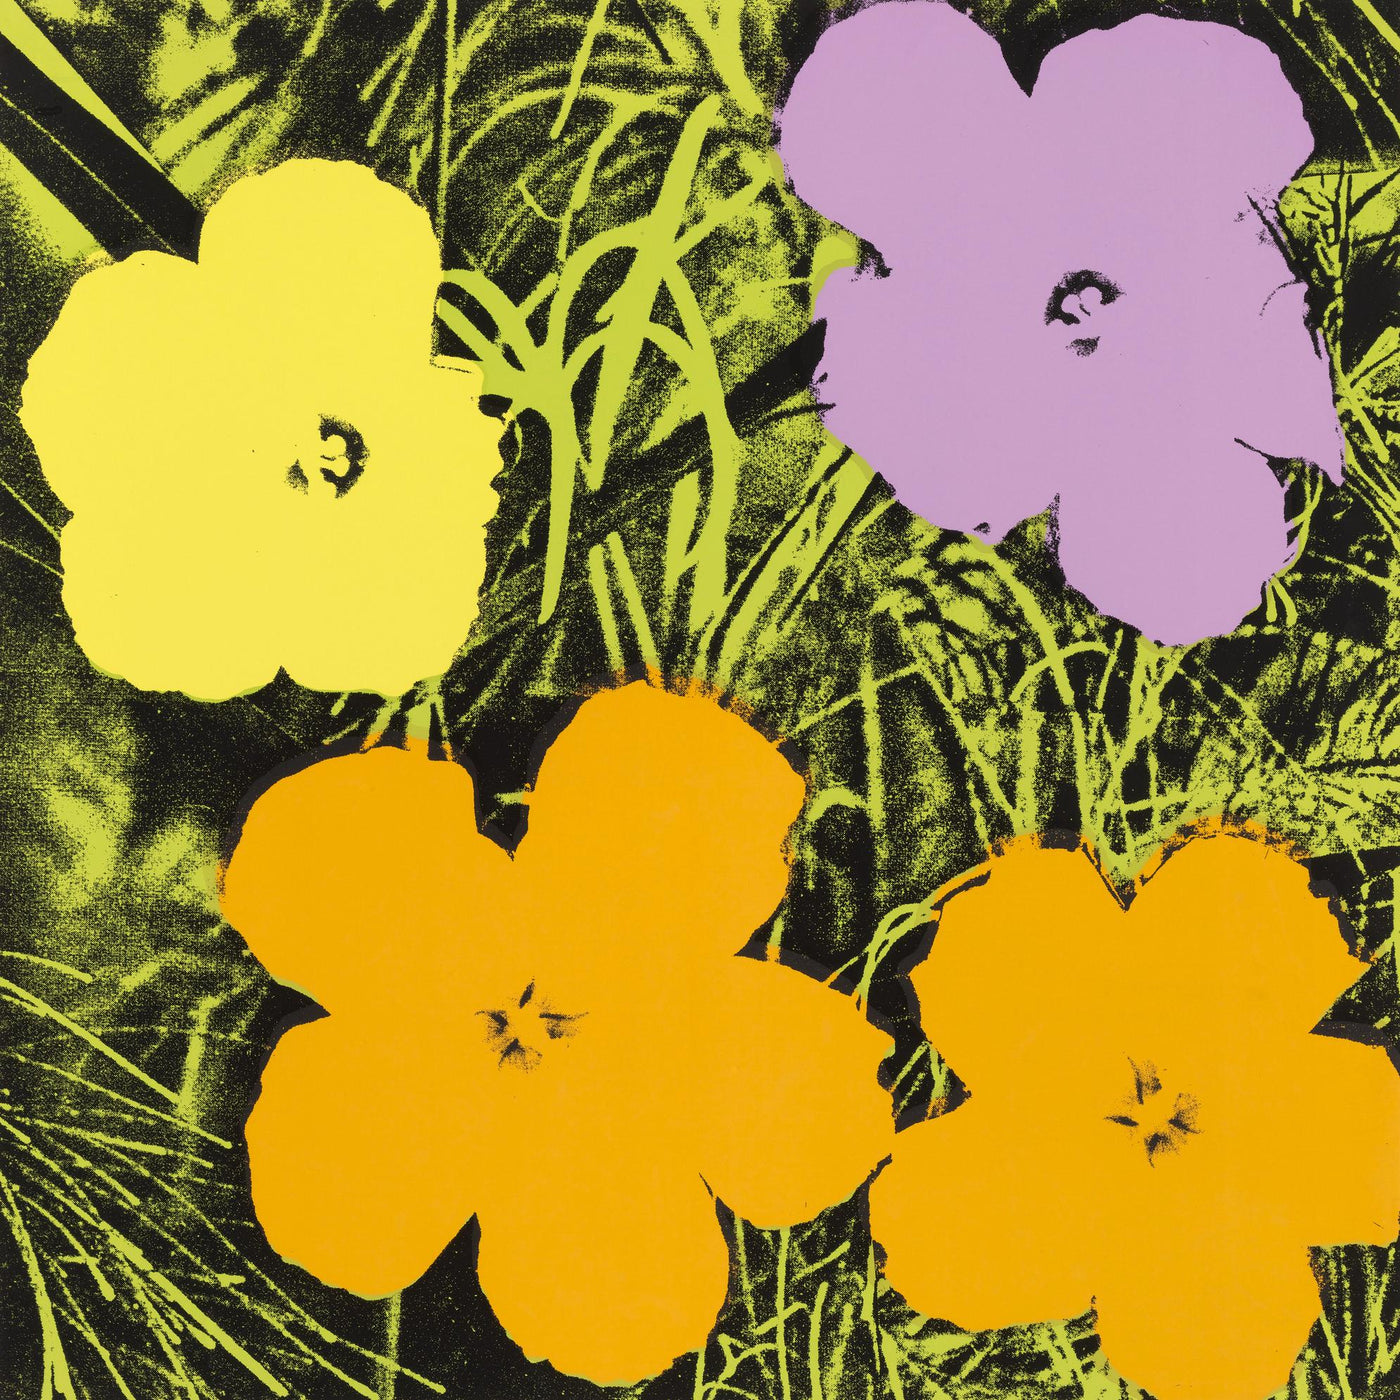 Andy Warhol Flowers (Feldman II.67) 1970